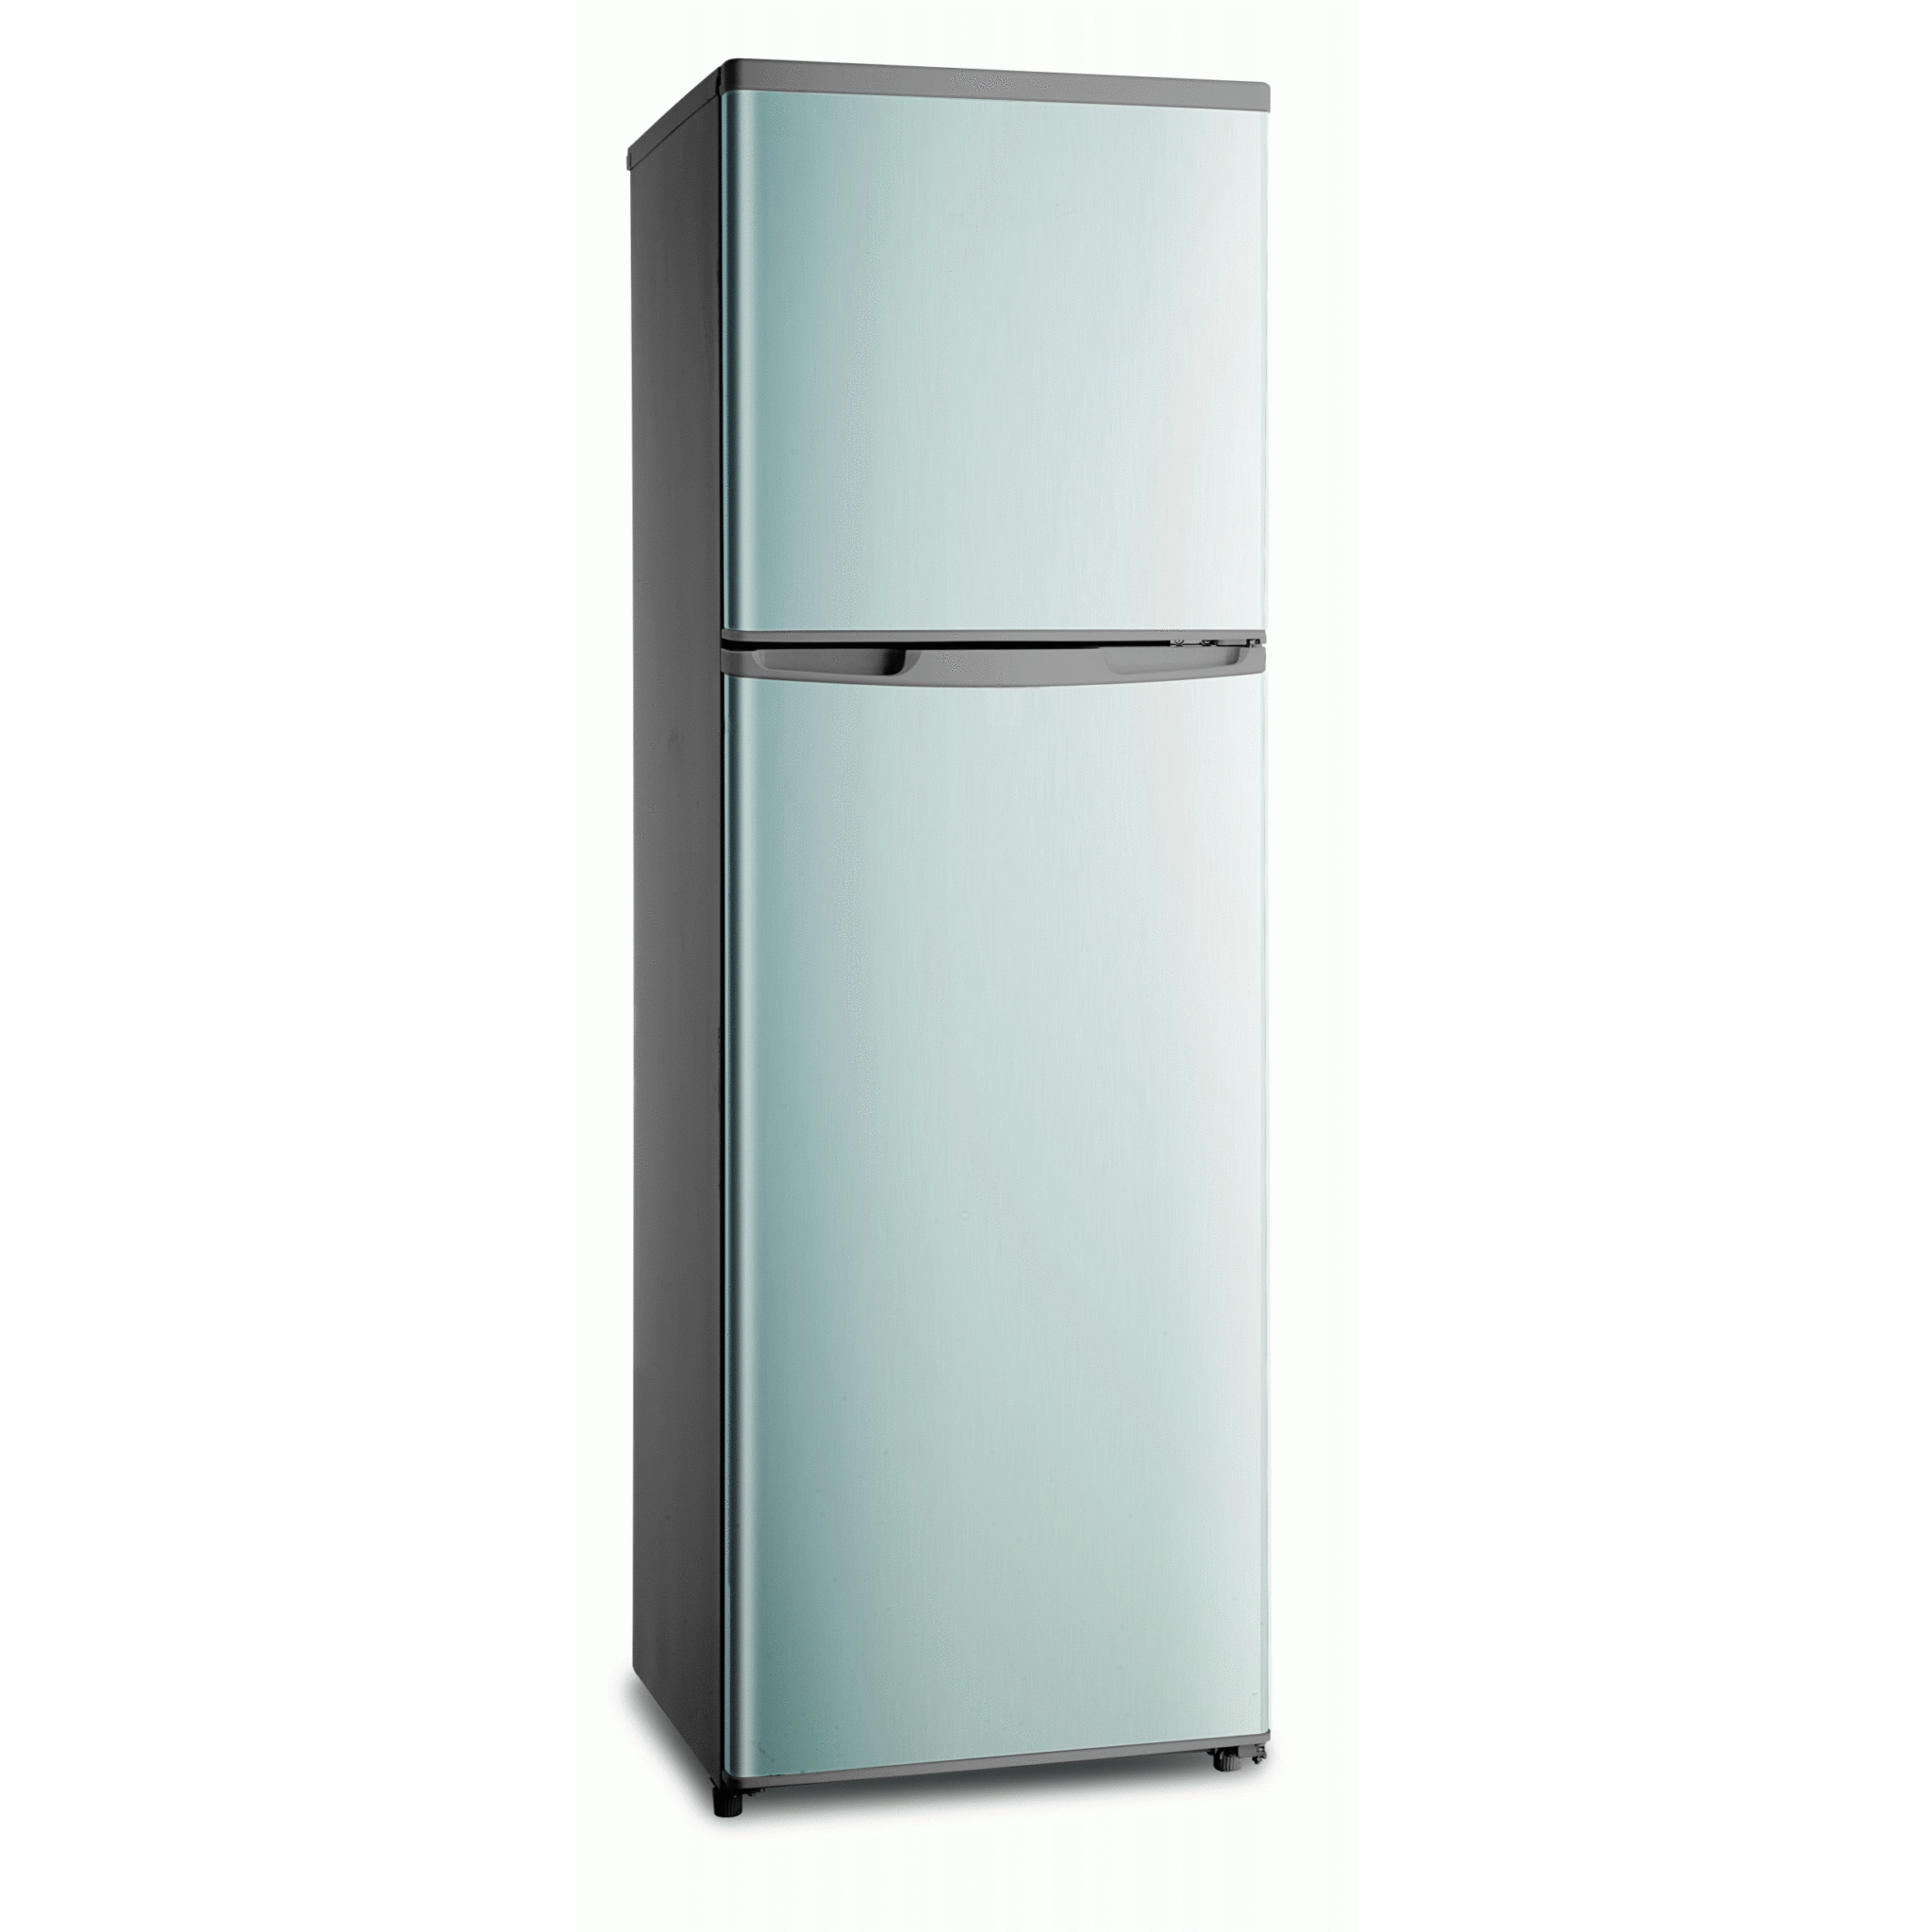 Hisense Refrigerator Mini Fridge